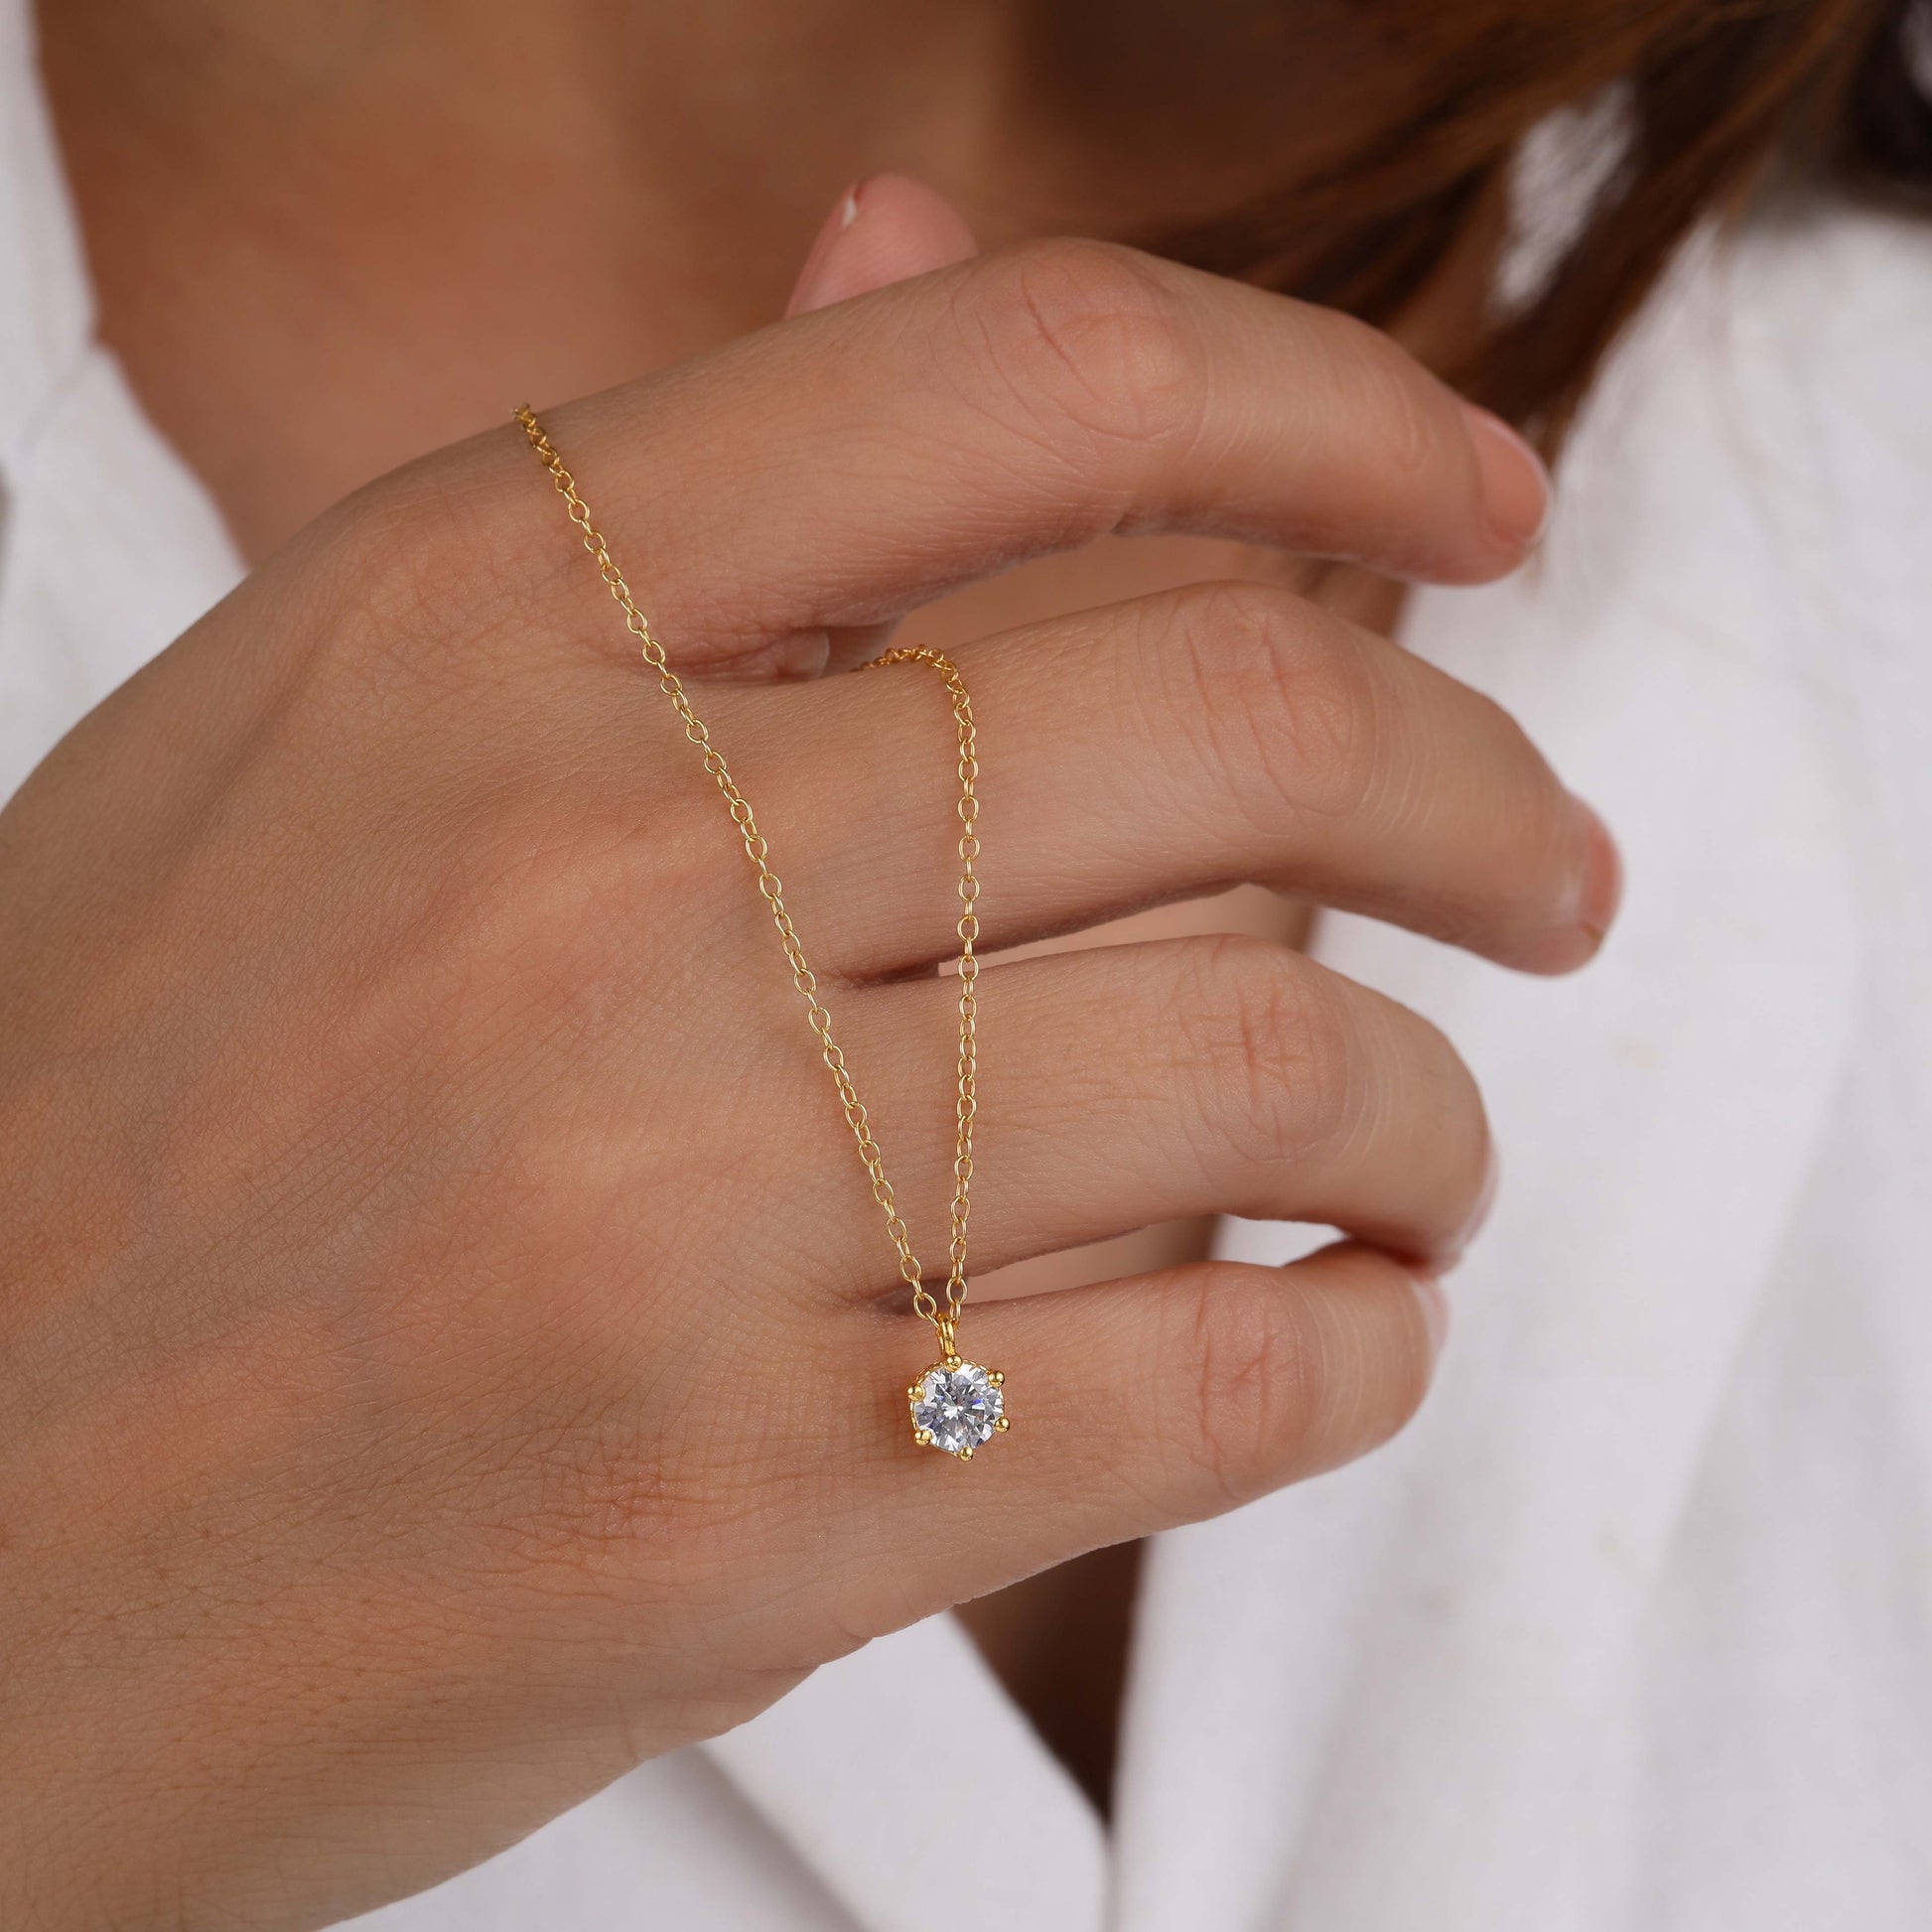 1 carat Round Cut Diamond Necklace